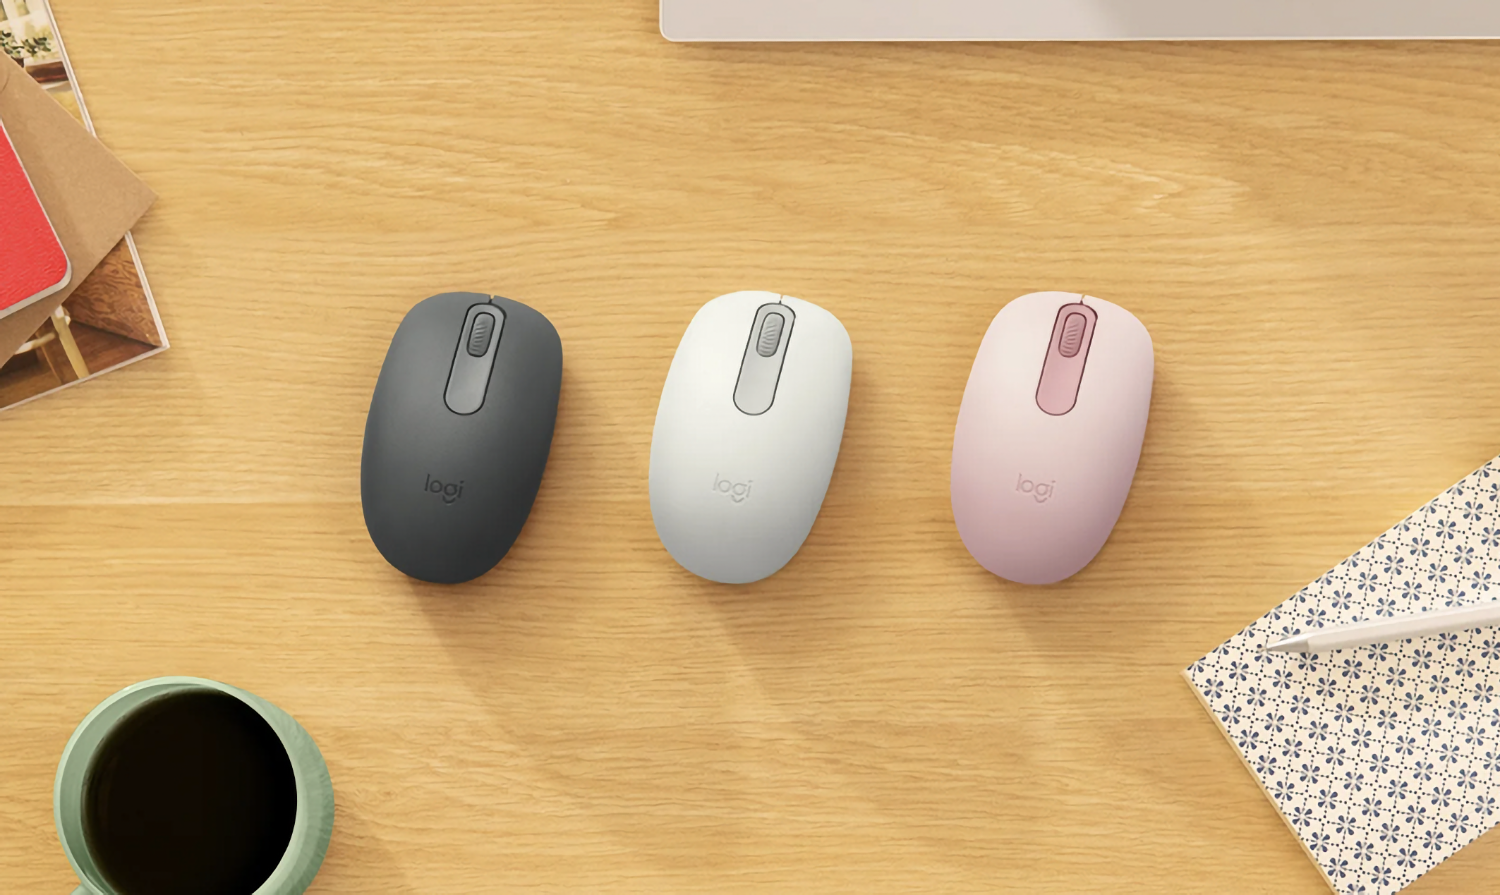 Logitech представила минималистичную компьютерную мышь в разных цветах за 1000 рублей1